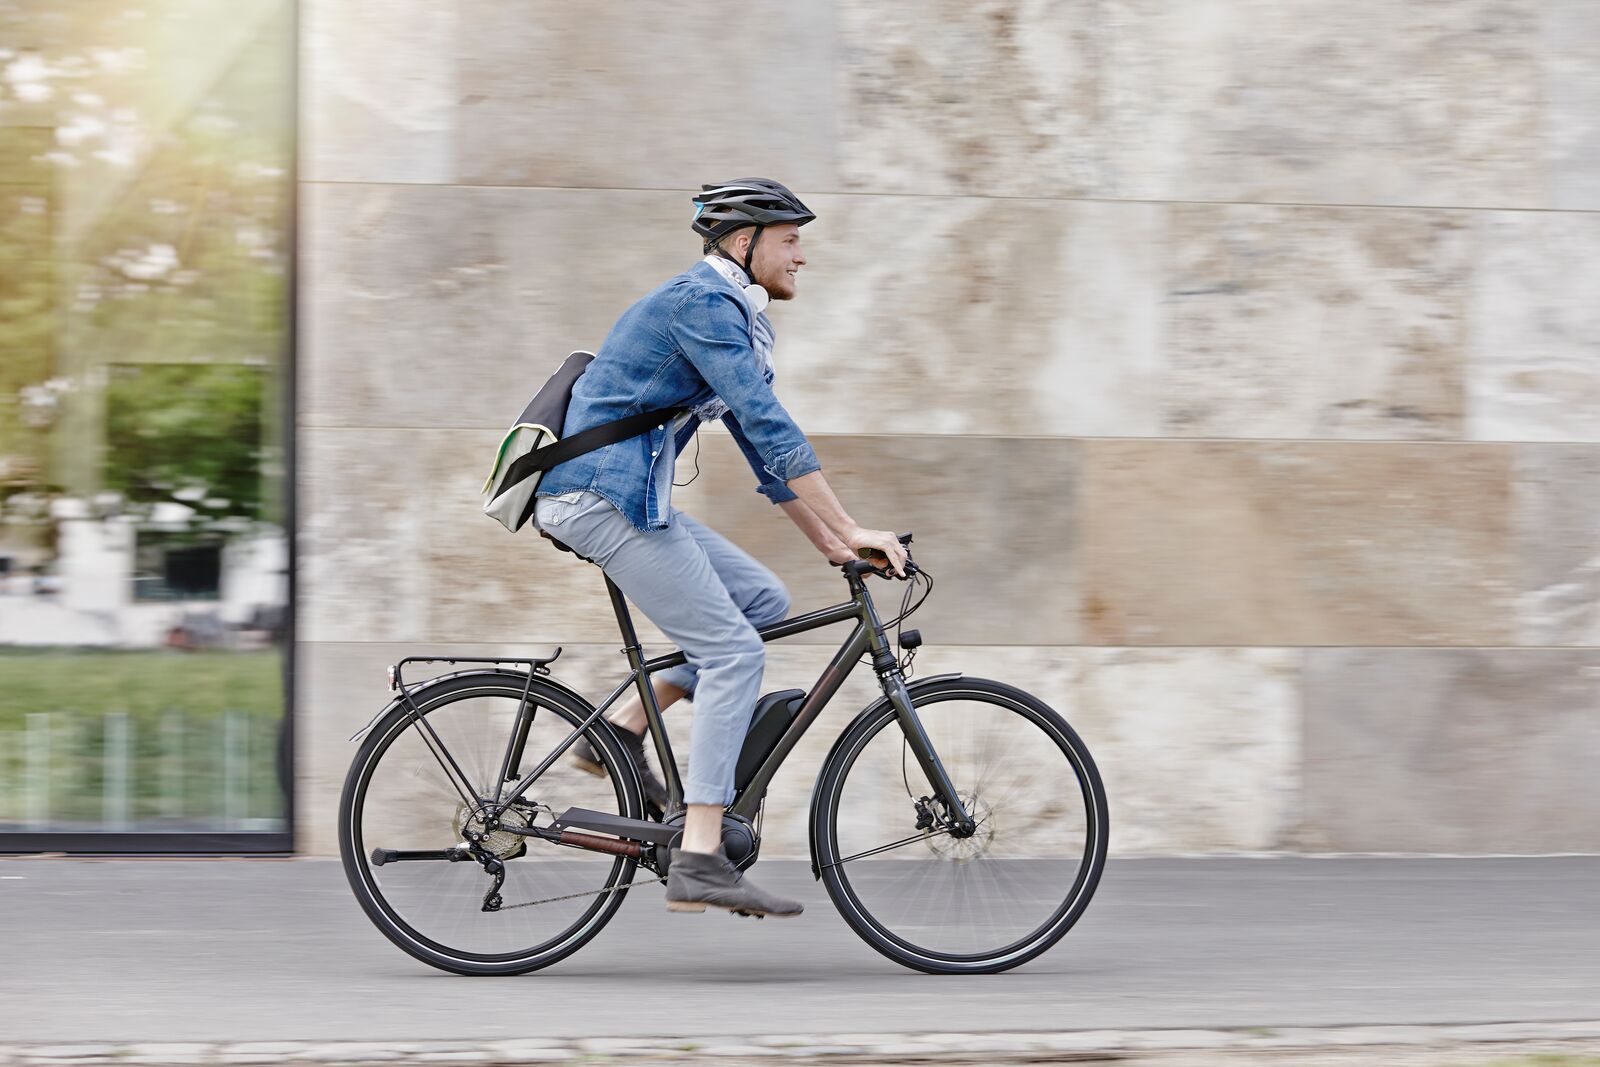 Optimale voorjaarscontrole voor je e-bike: Checklist voor veilig en comfortabel fietsen